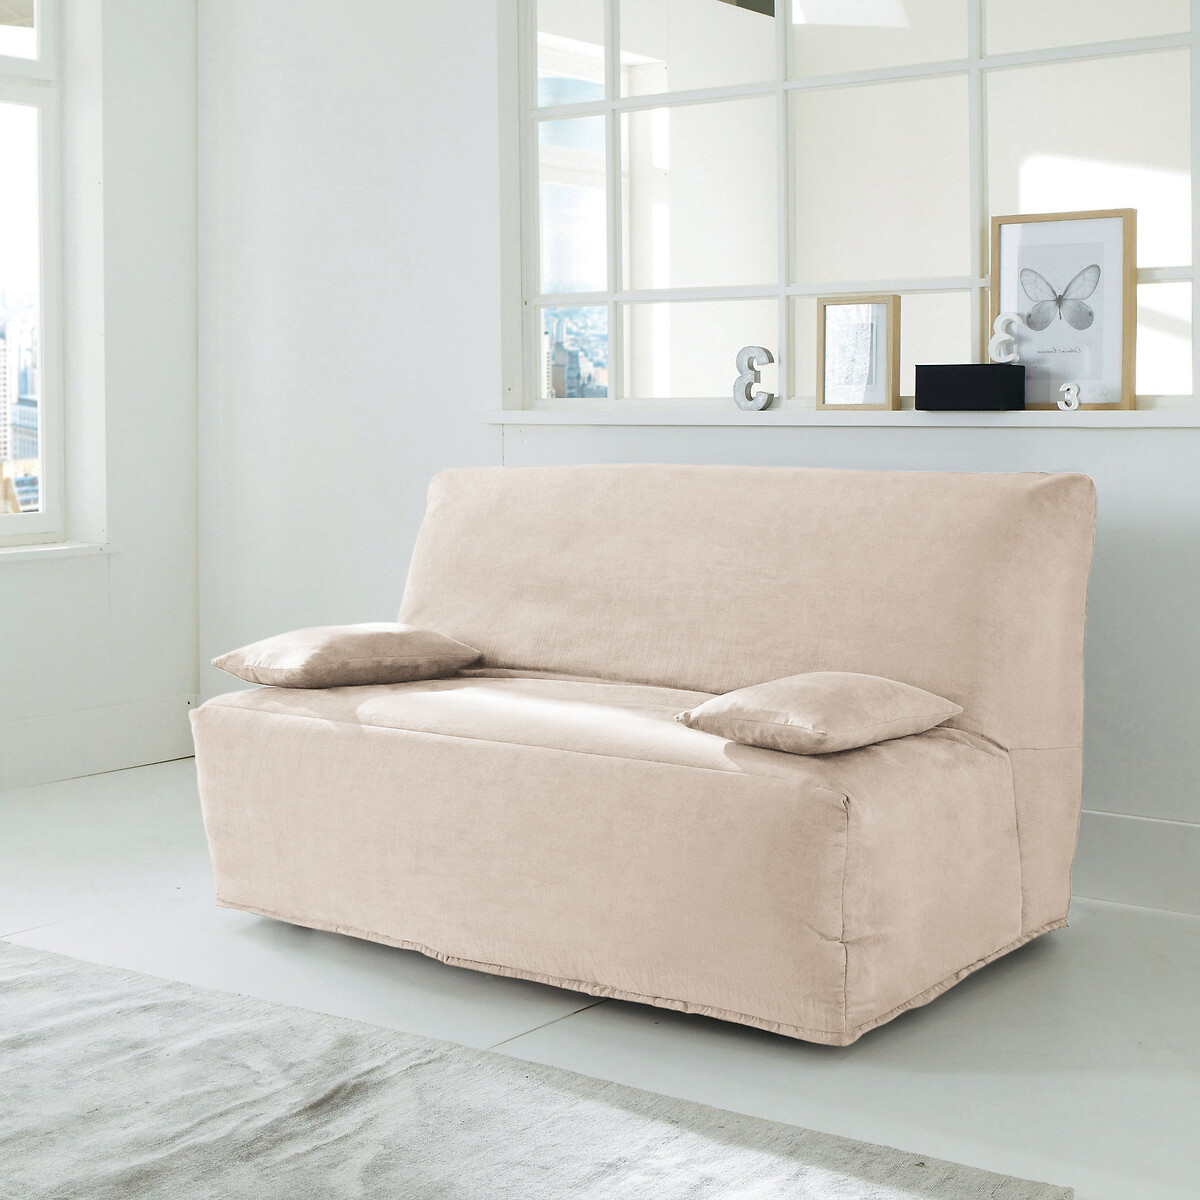 Funda para sofá cama clic-clac de antelina So'home | La Redoute